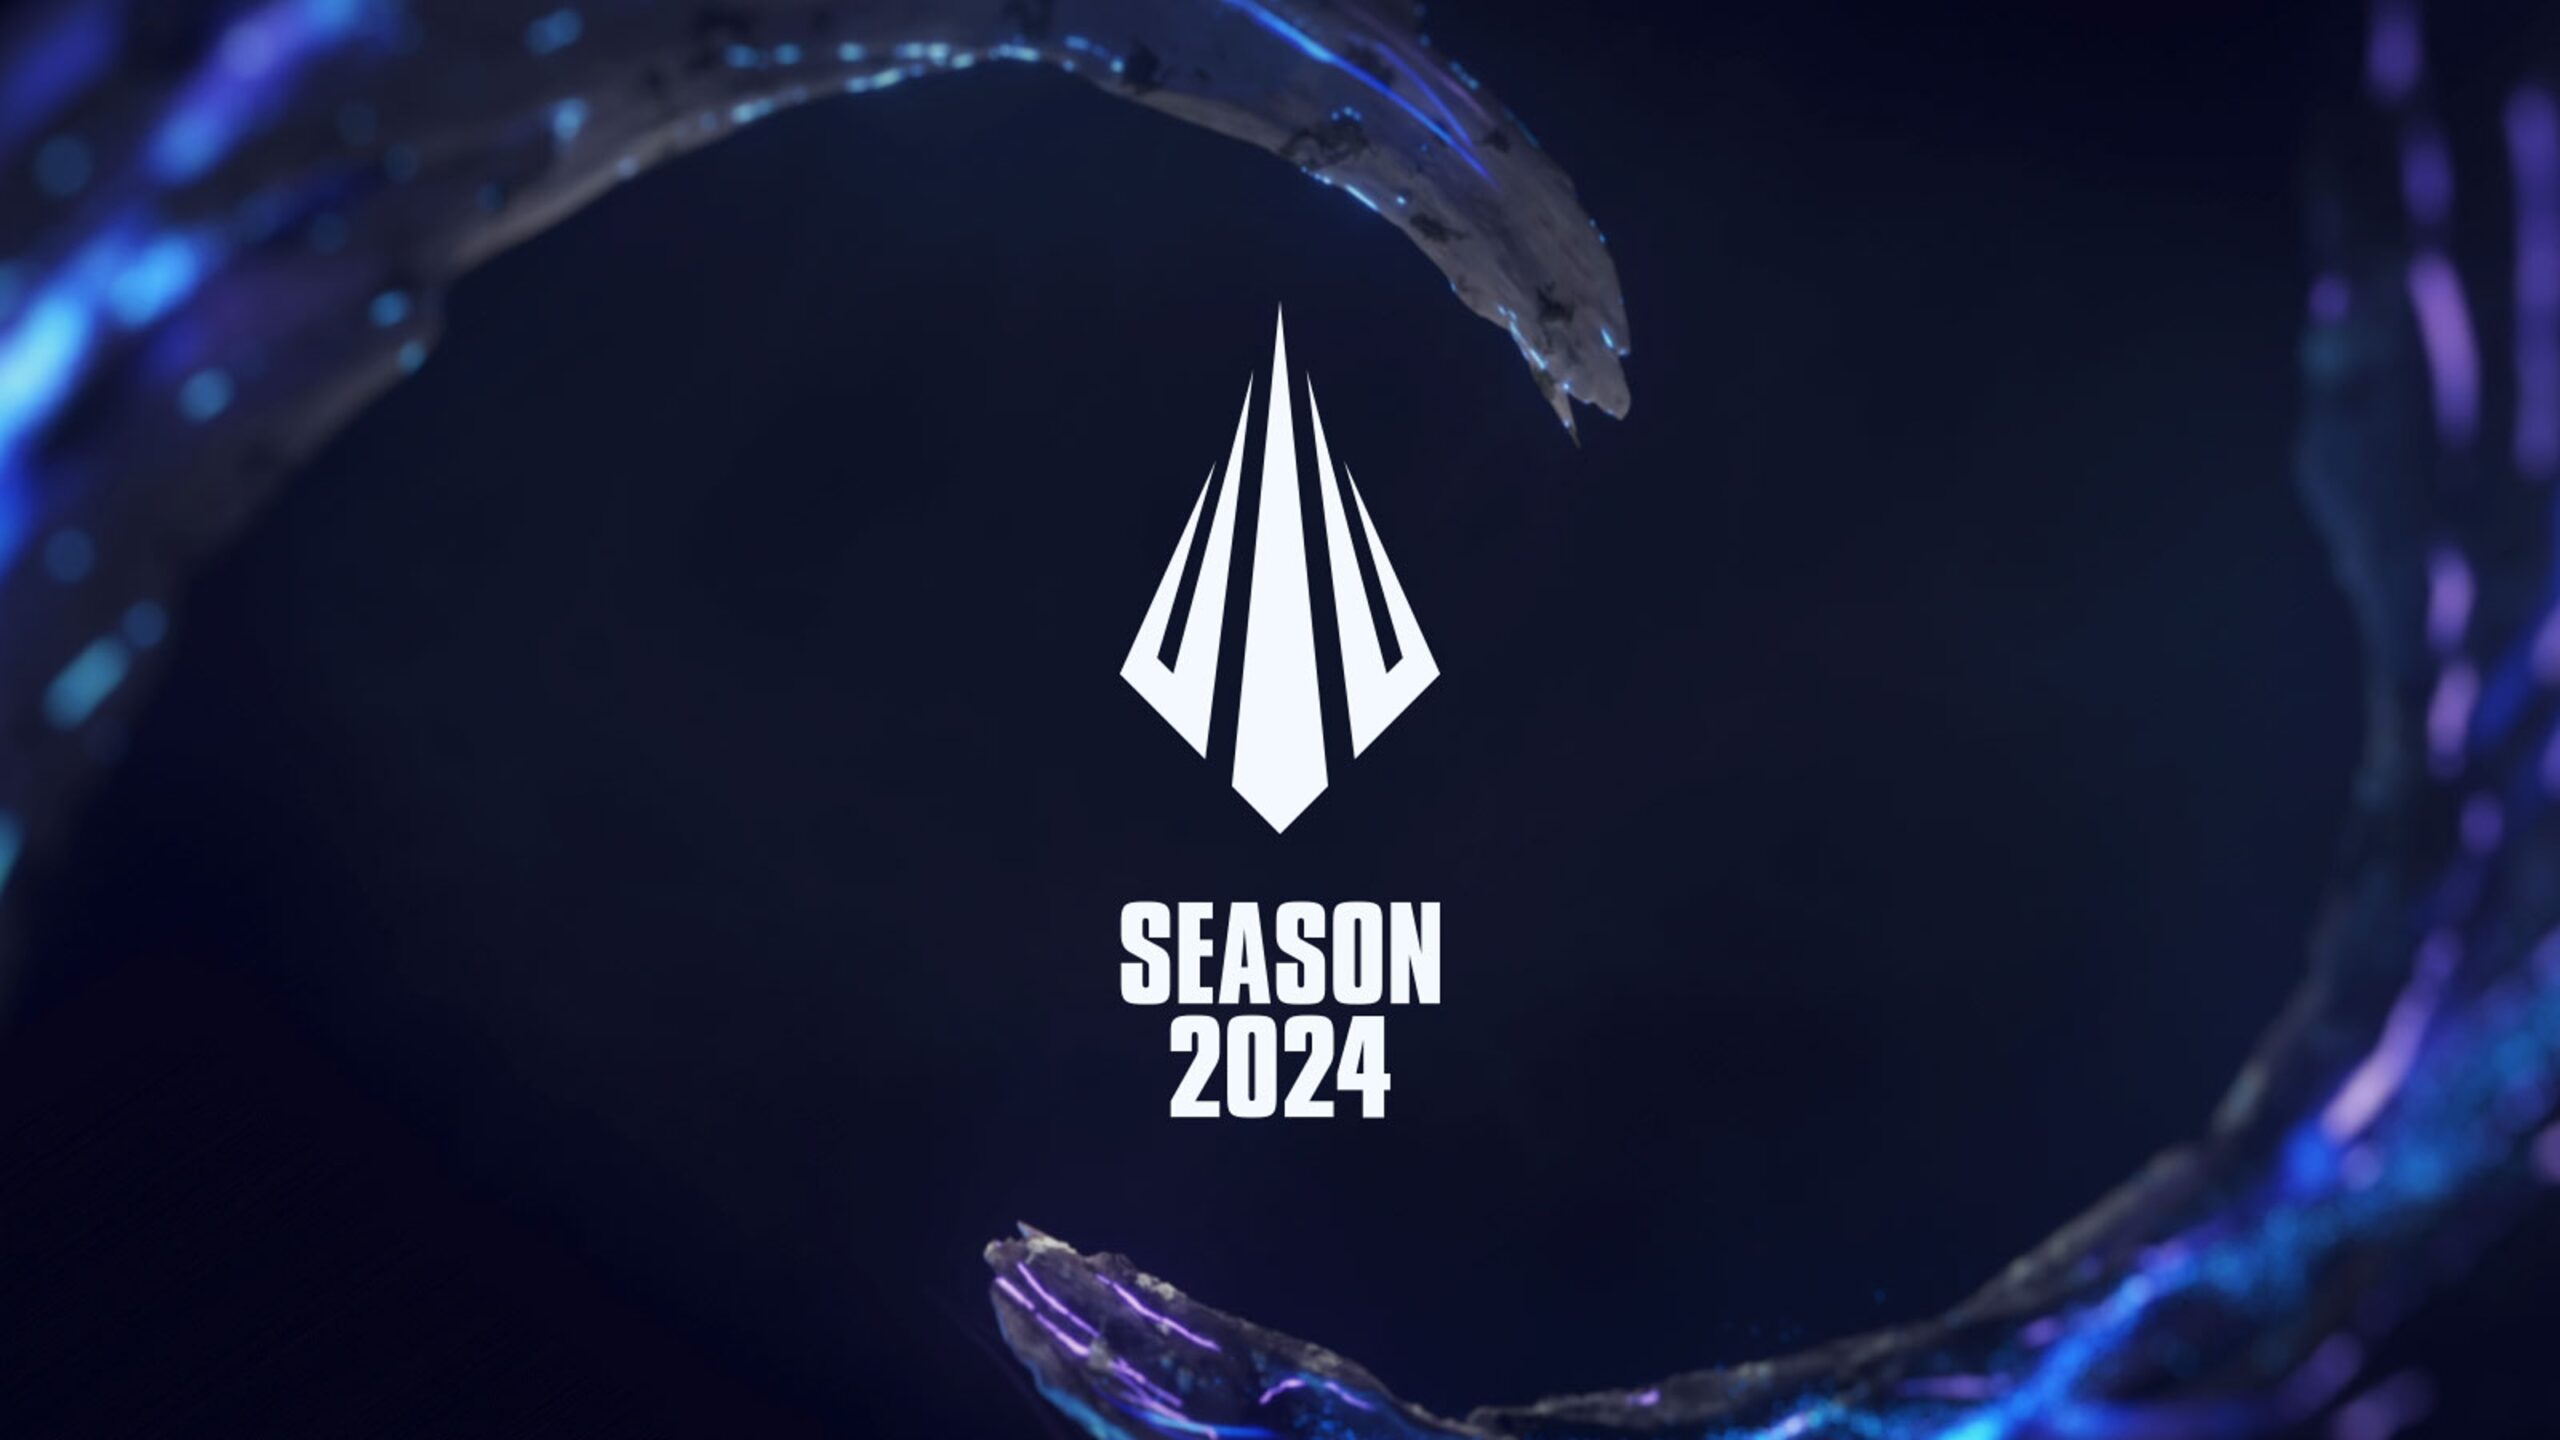 LoL Esports : Mengarungi Musim 2024 dengan Penuh Semangat di League of Legends